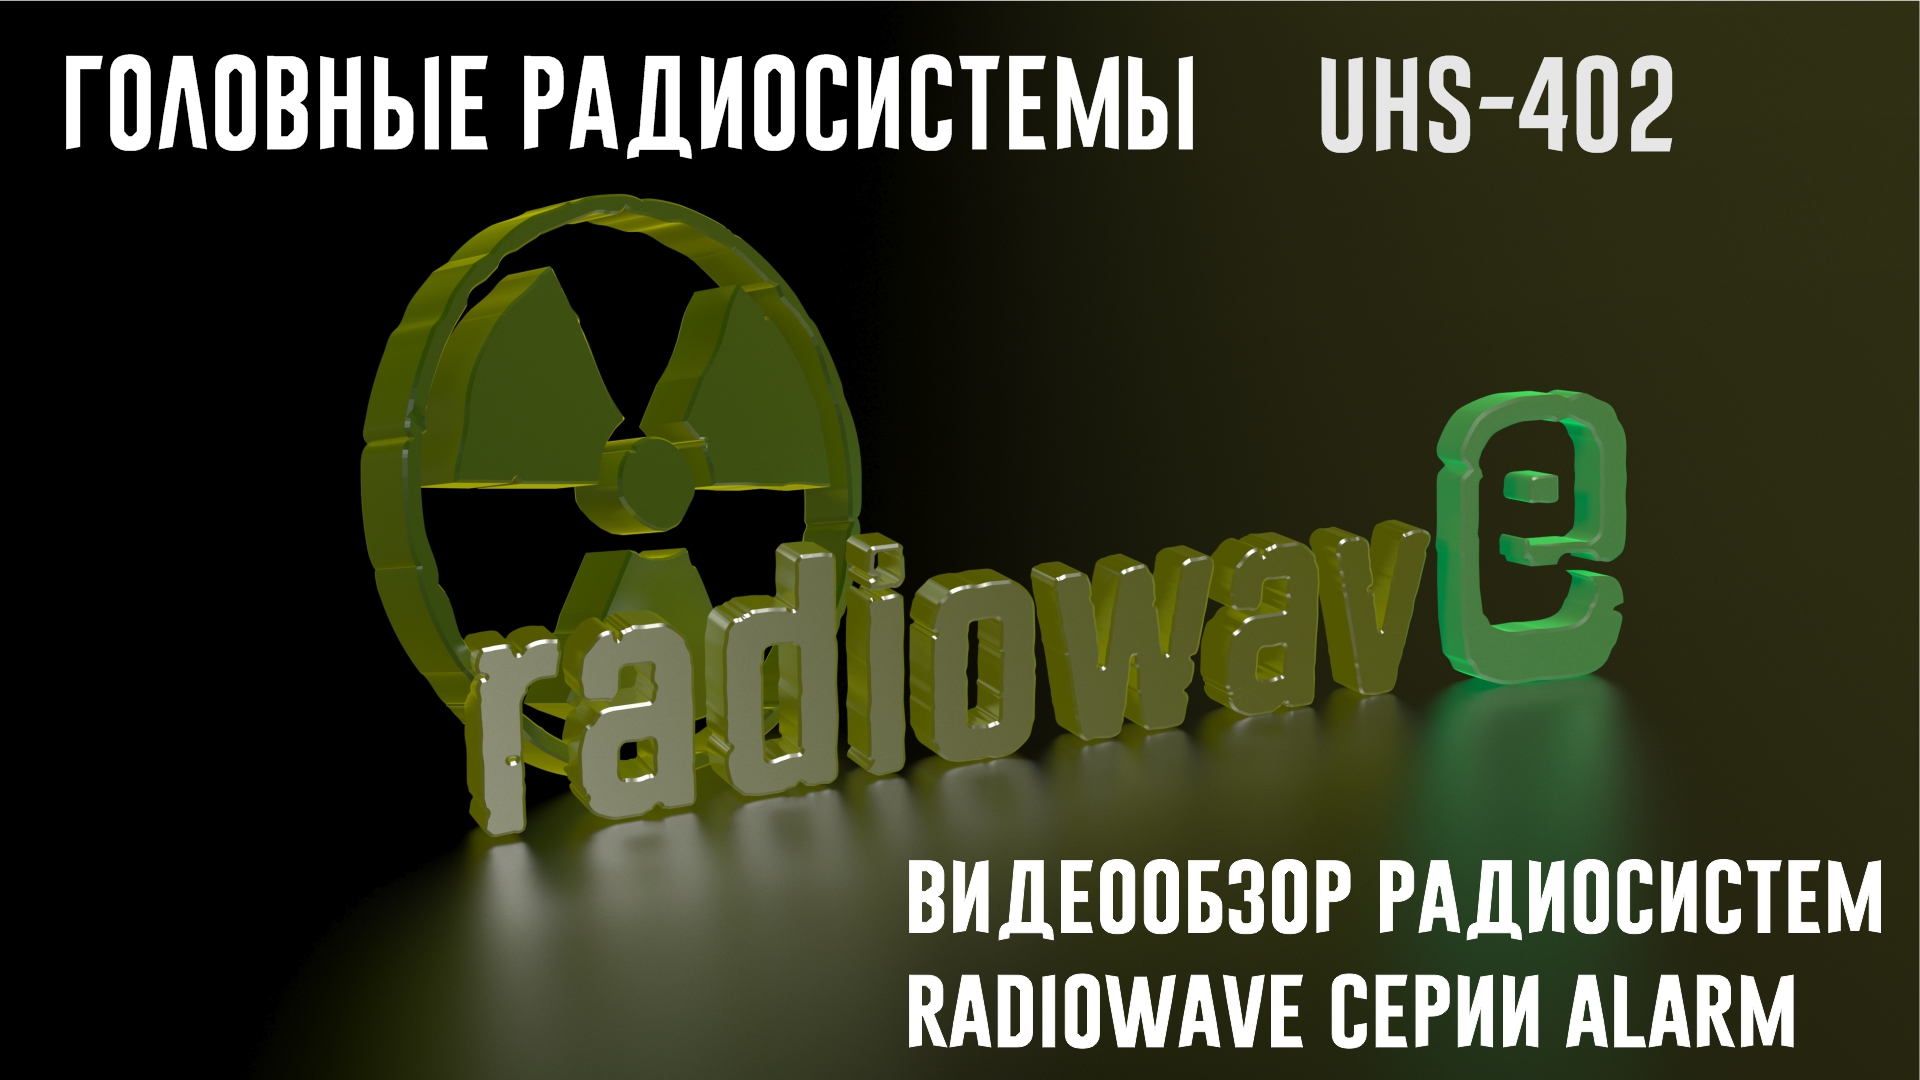 Radiowave UHS-402 Головные Радиосистемы